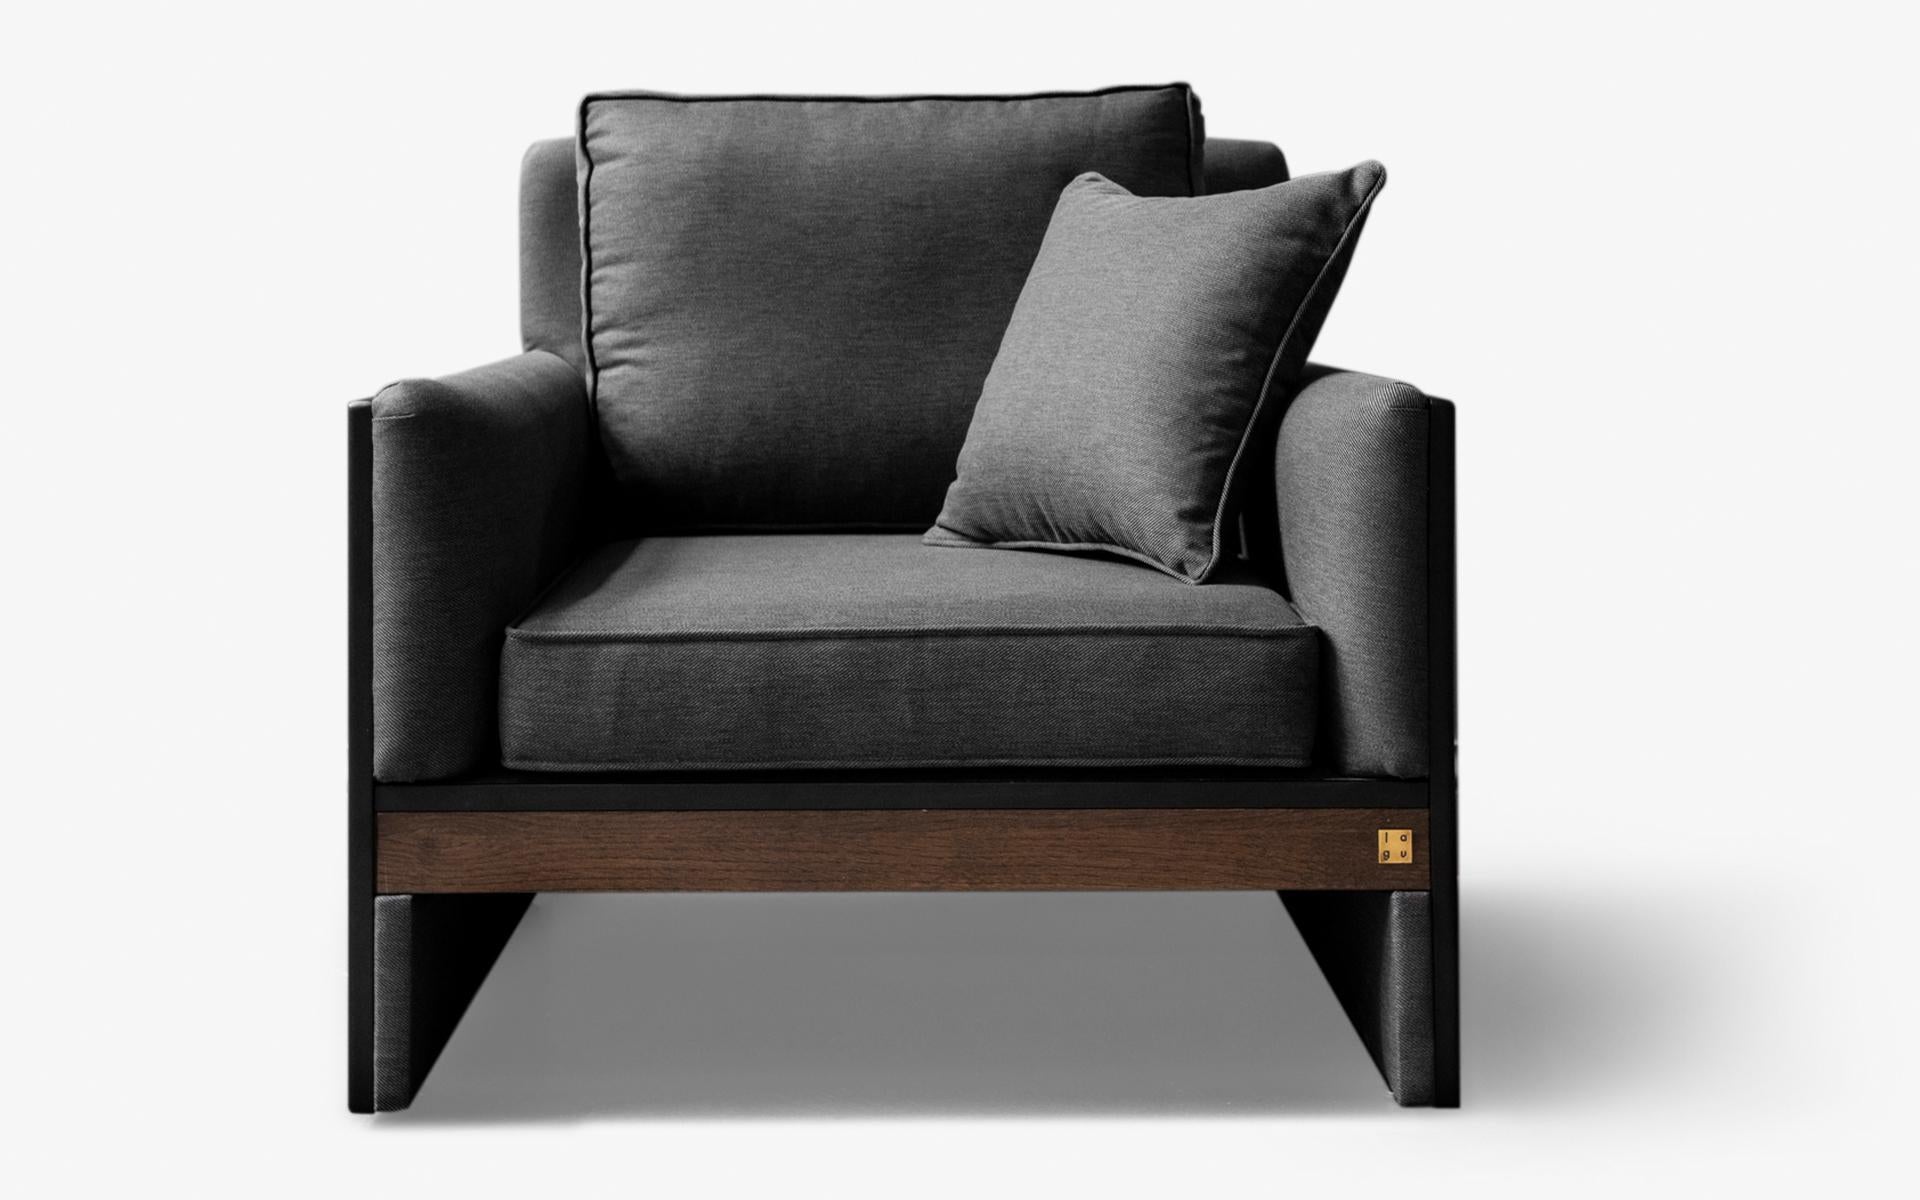 Der Famed Sessel verbindet harmonisch Stoff mit Metall und verleiht Ihrem Raum einen Hauch von Qualität.

Die Größe des vermessingten Metalls oder das warme Gefühl von Holz... Welches Material Sie auch immer wählen, der FAMED Einzelsitz schafft ein